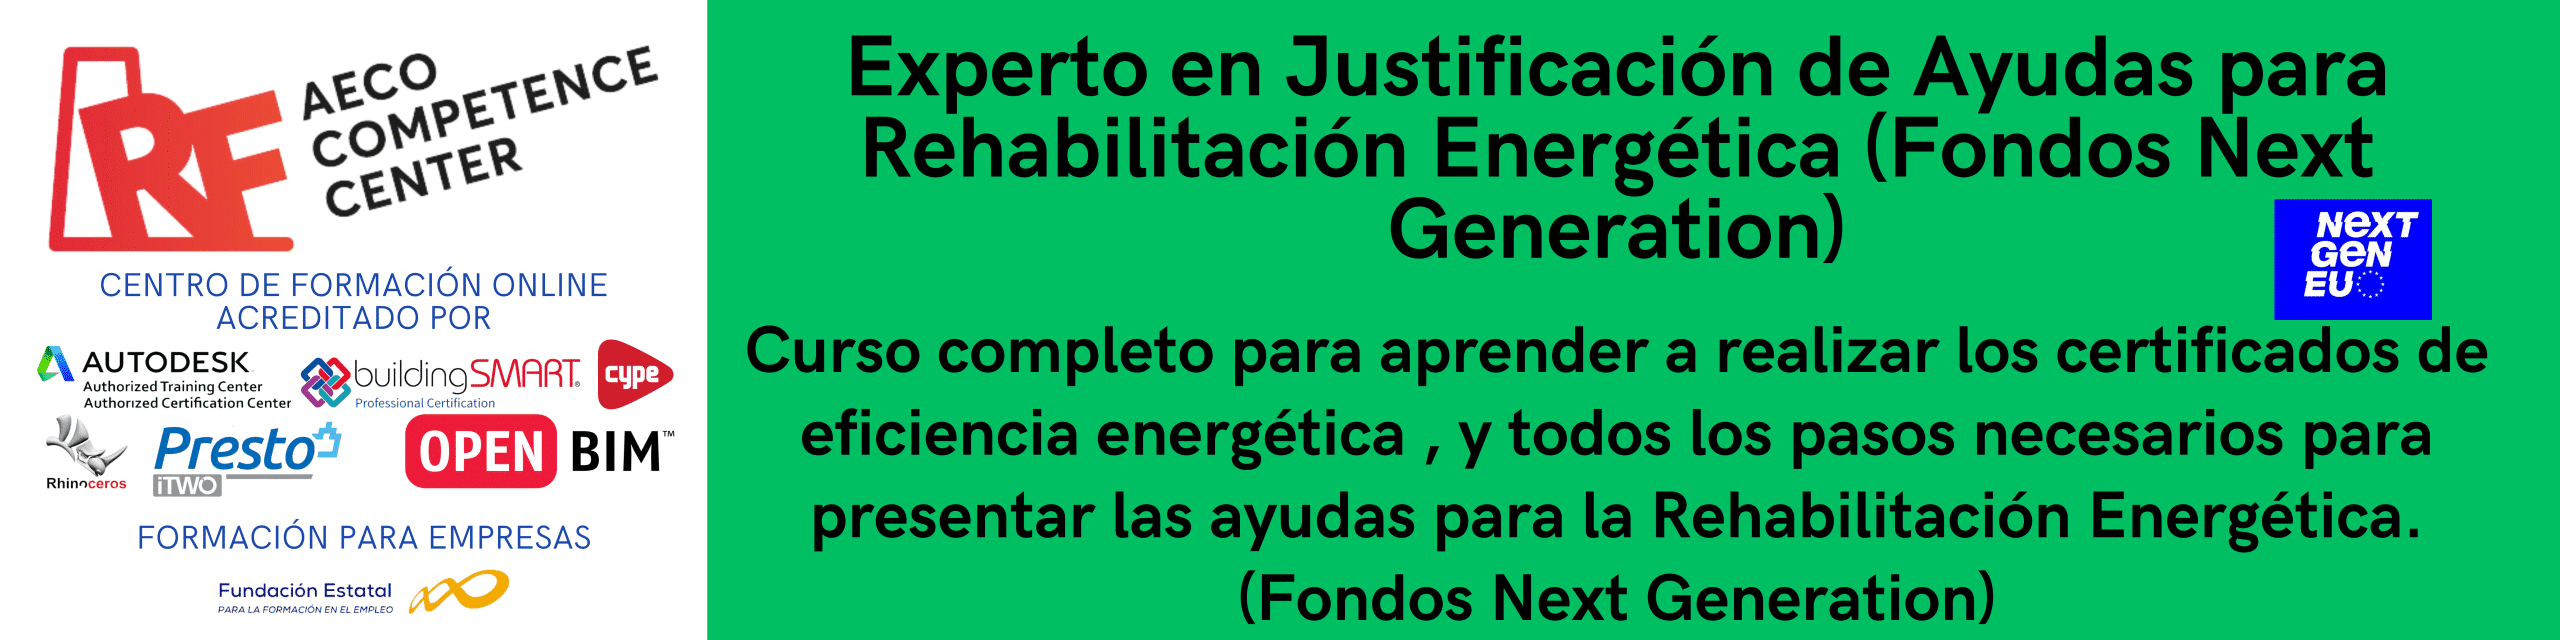 Experto en Justificación de Ayudas para Rehabilitación Energética (Fondos Next Generation)